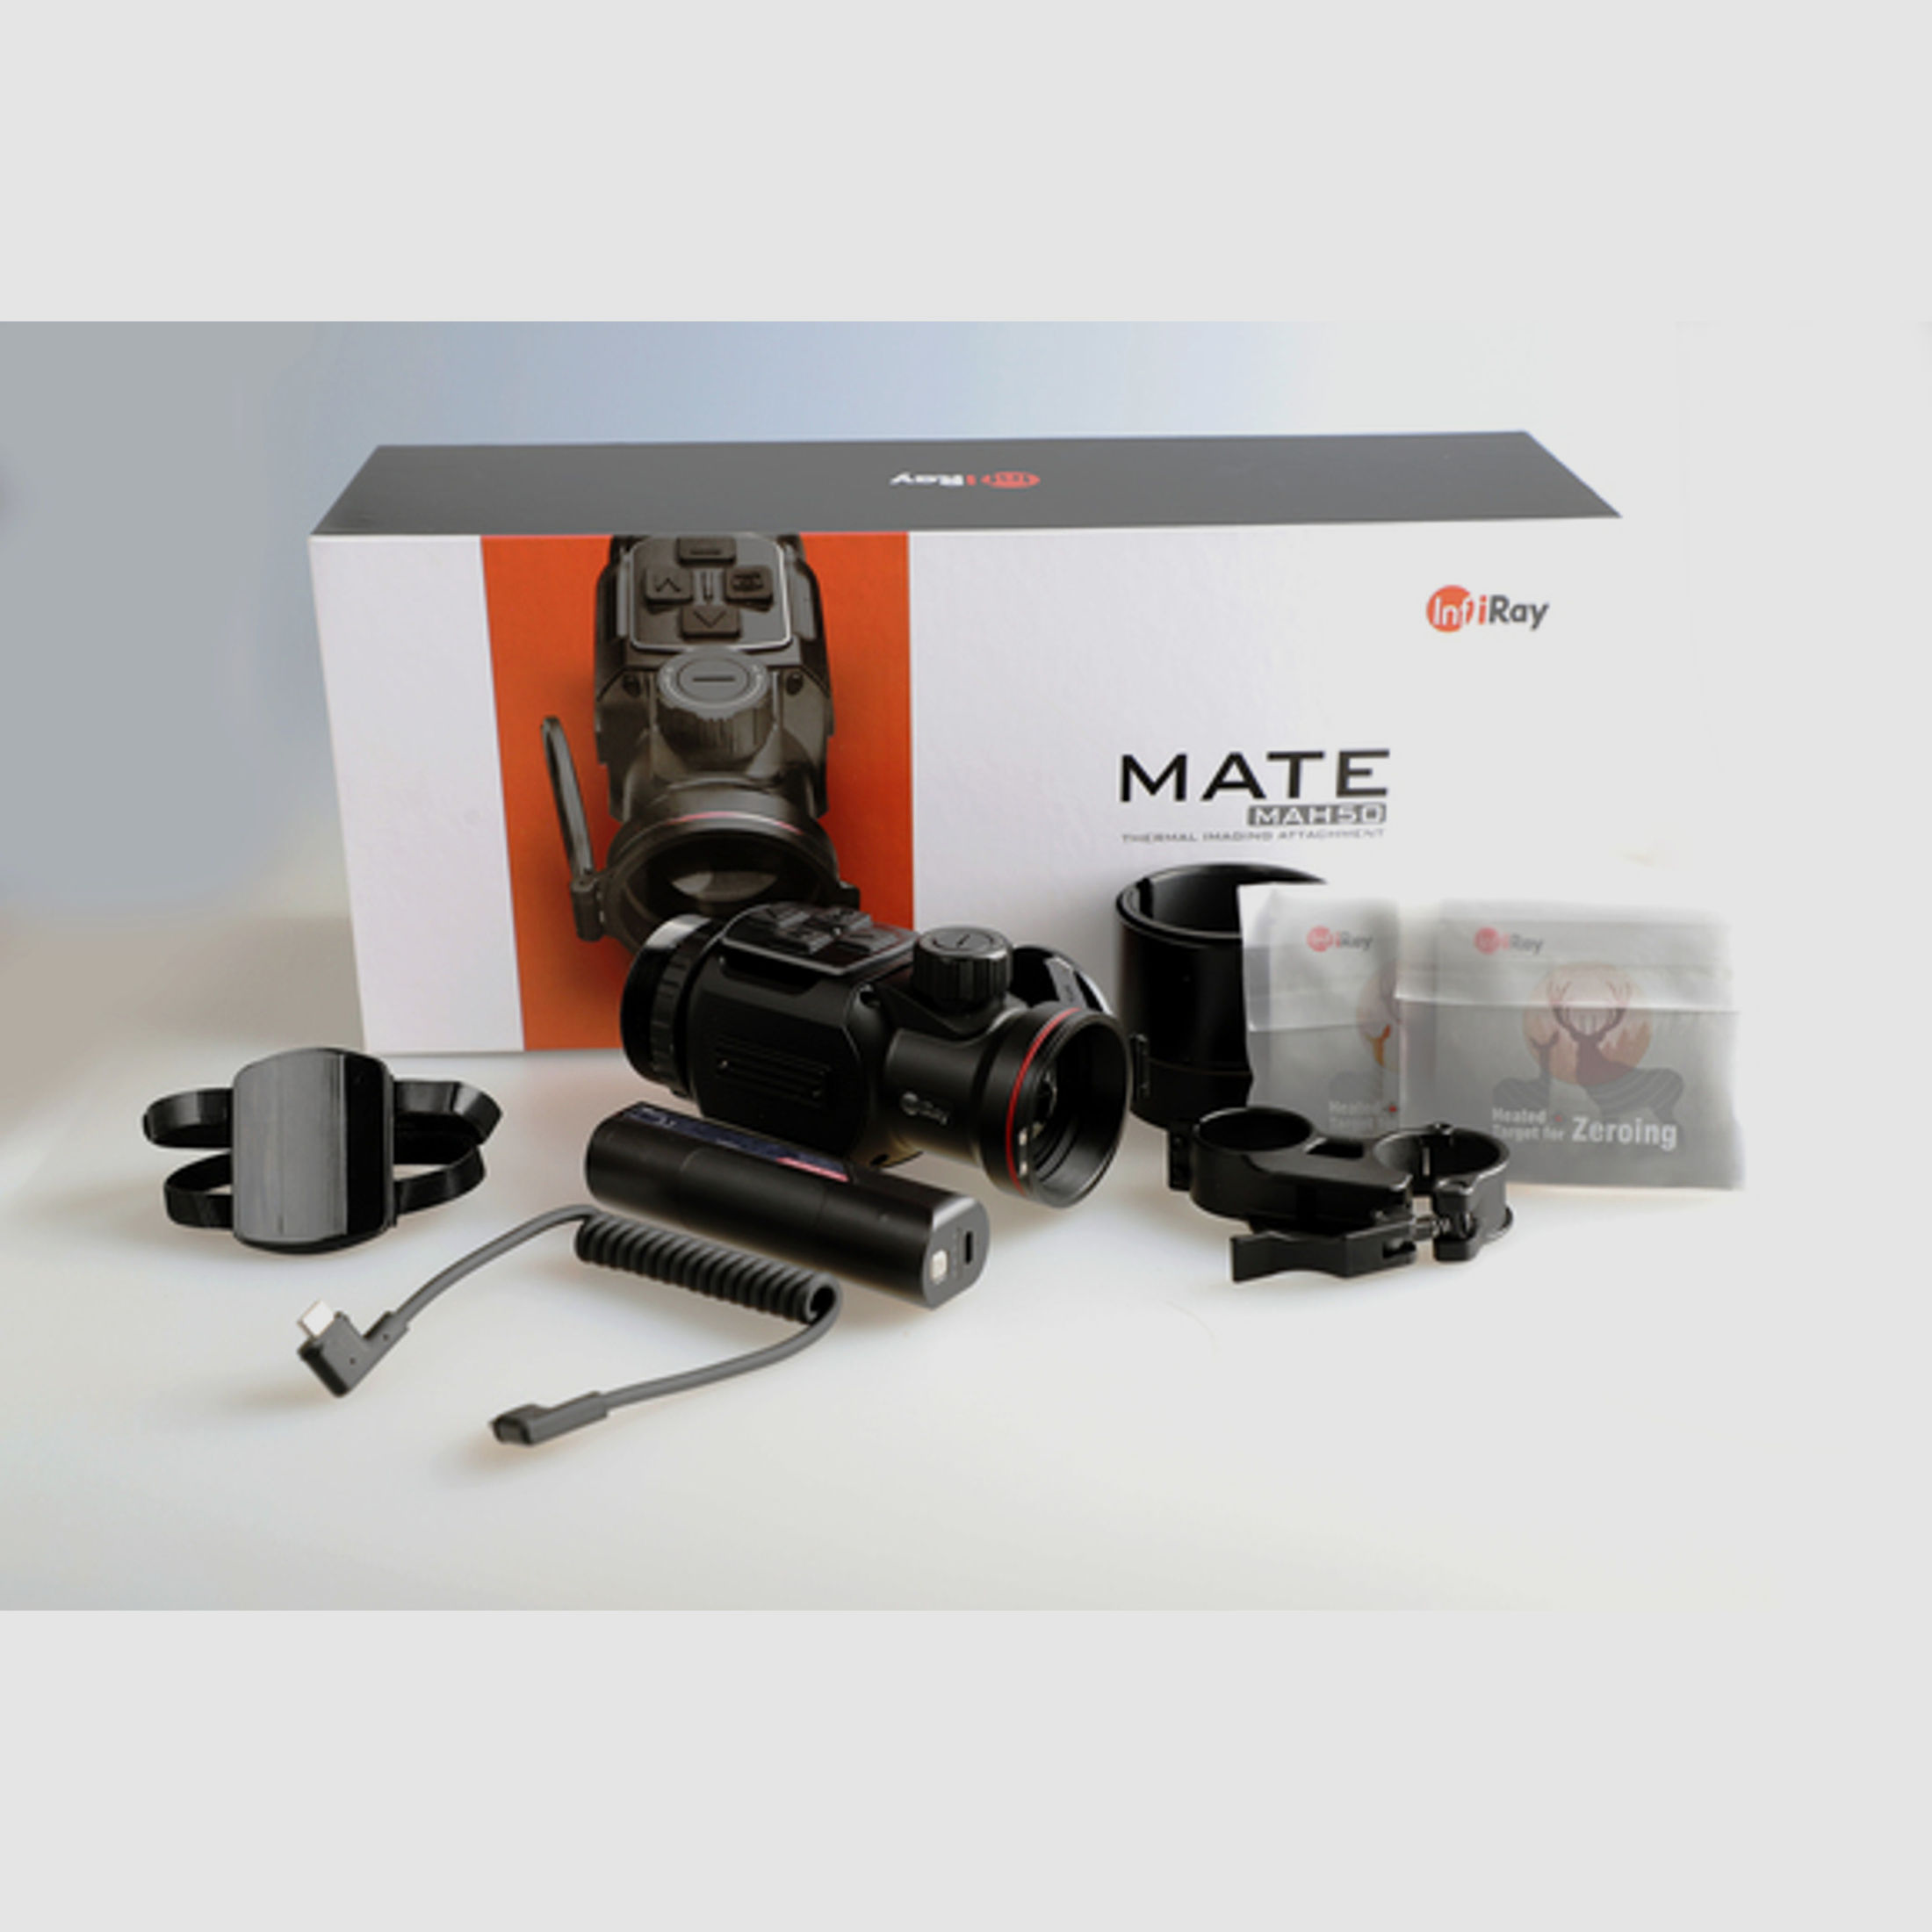 Infiray Wärmebildkamera Infiray Mate MAH50 Sensor 640x512